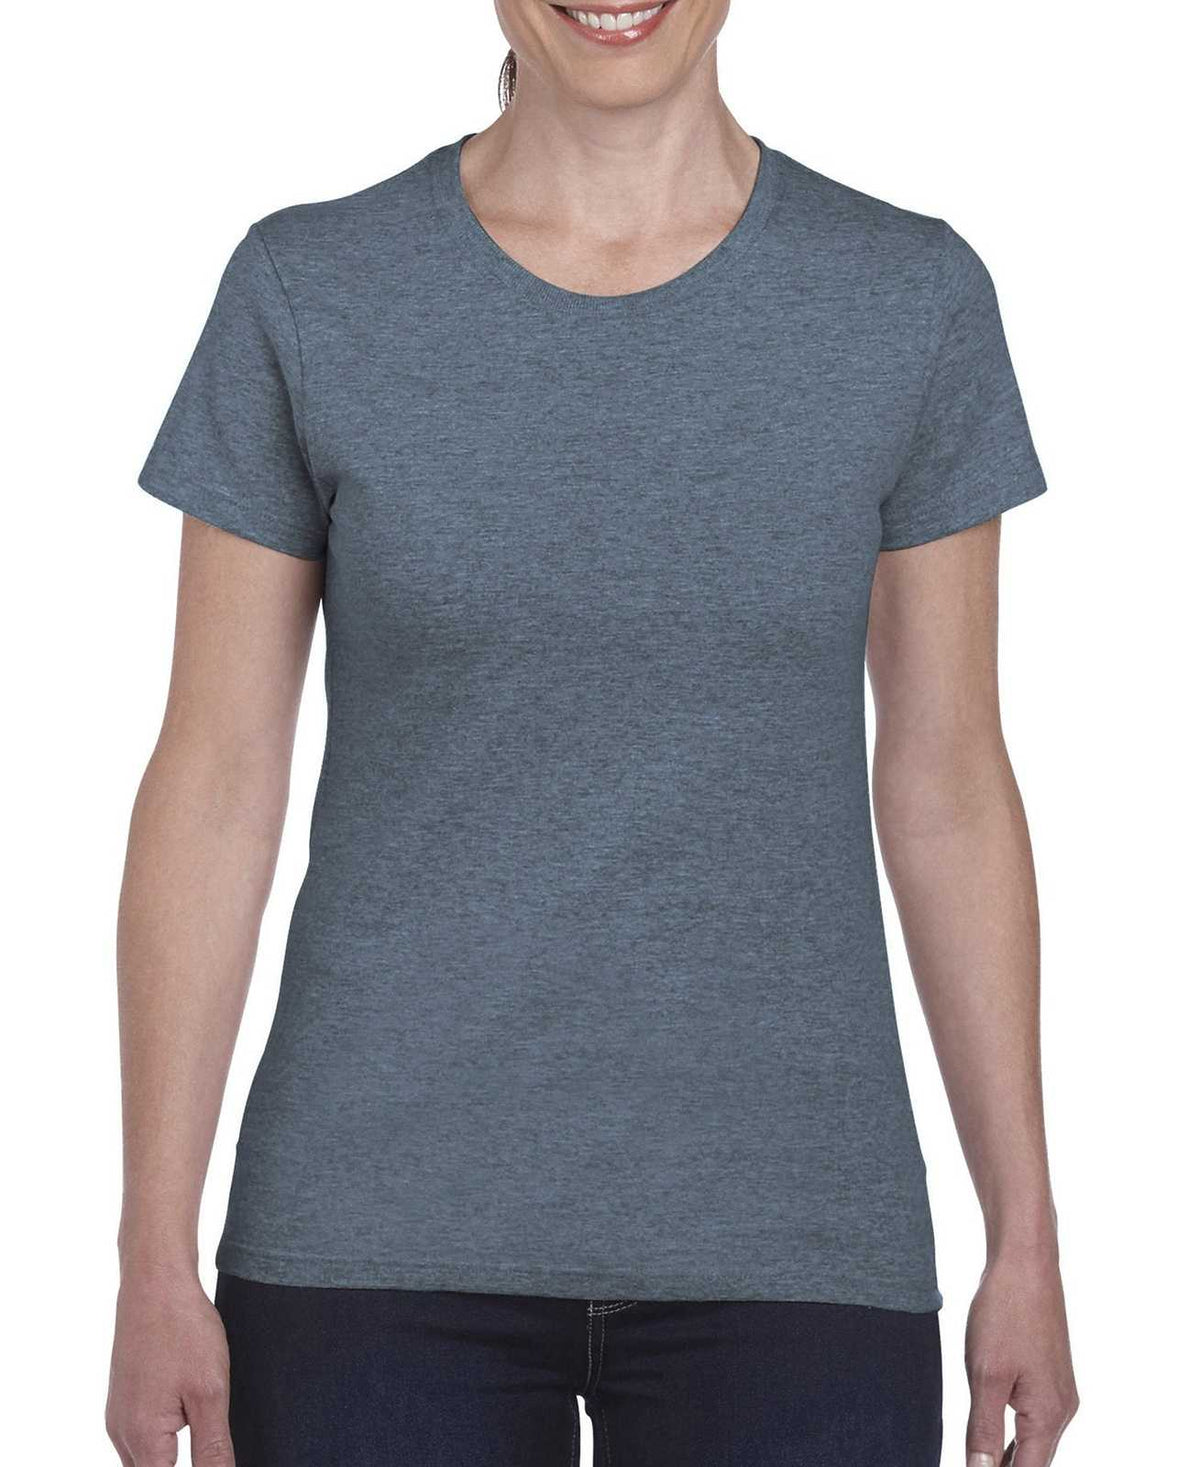 Gildan 5000L Ladies Heavy Cotton 100% Cotton T-Shirt - Heather Navy - HIT a Double